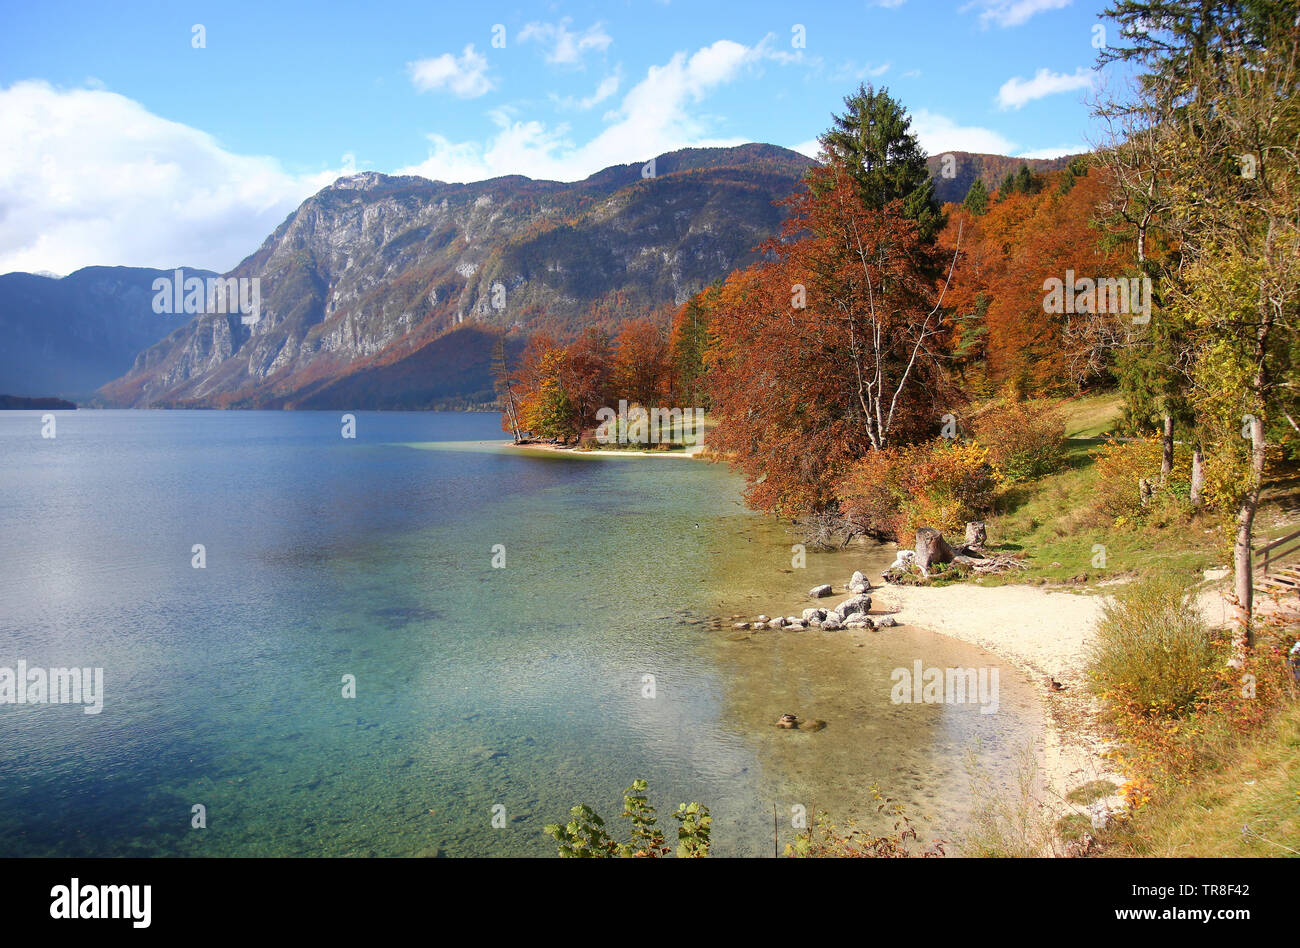 Lac de Bohinj, paysage d'automne à Ribcev laz, sentier de randonnée Juliana, Alpes juliennes, parc national de Triglav, Gorenjska (Upper Carniola), Slovénie, Europe Banque D'Images